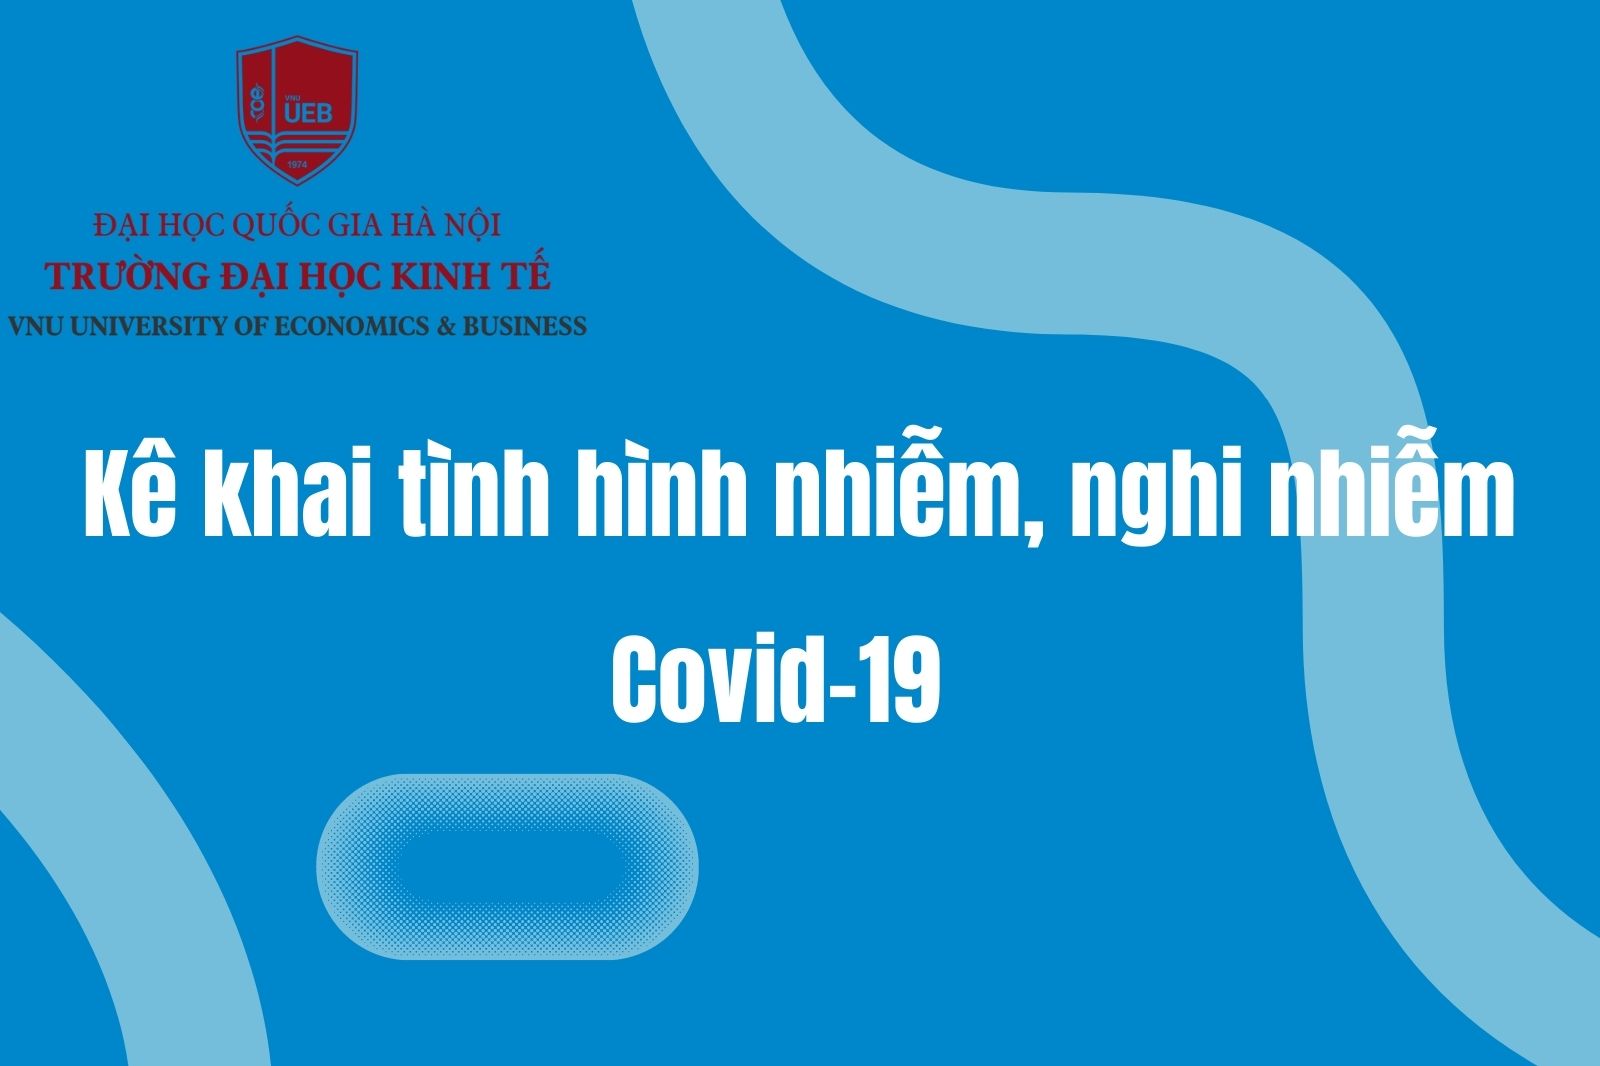  Cán bộ, giảng viên, sinh  viên kê khai tình hình nhiễm, nghi  nhiễm Covid-19 